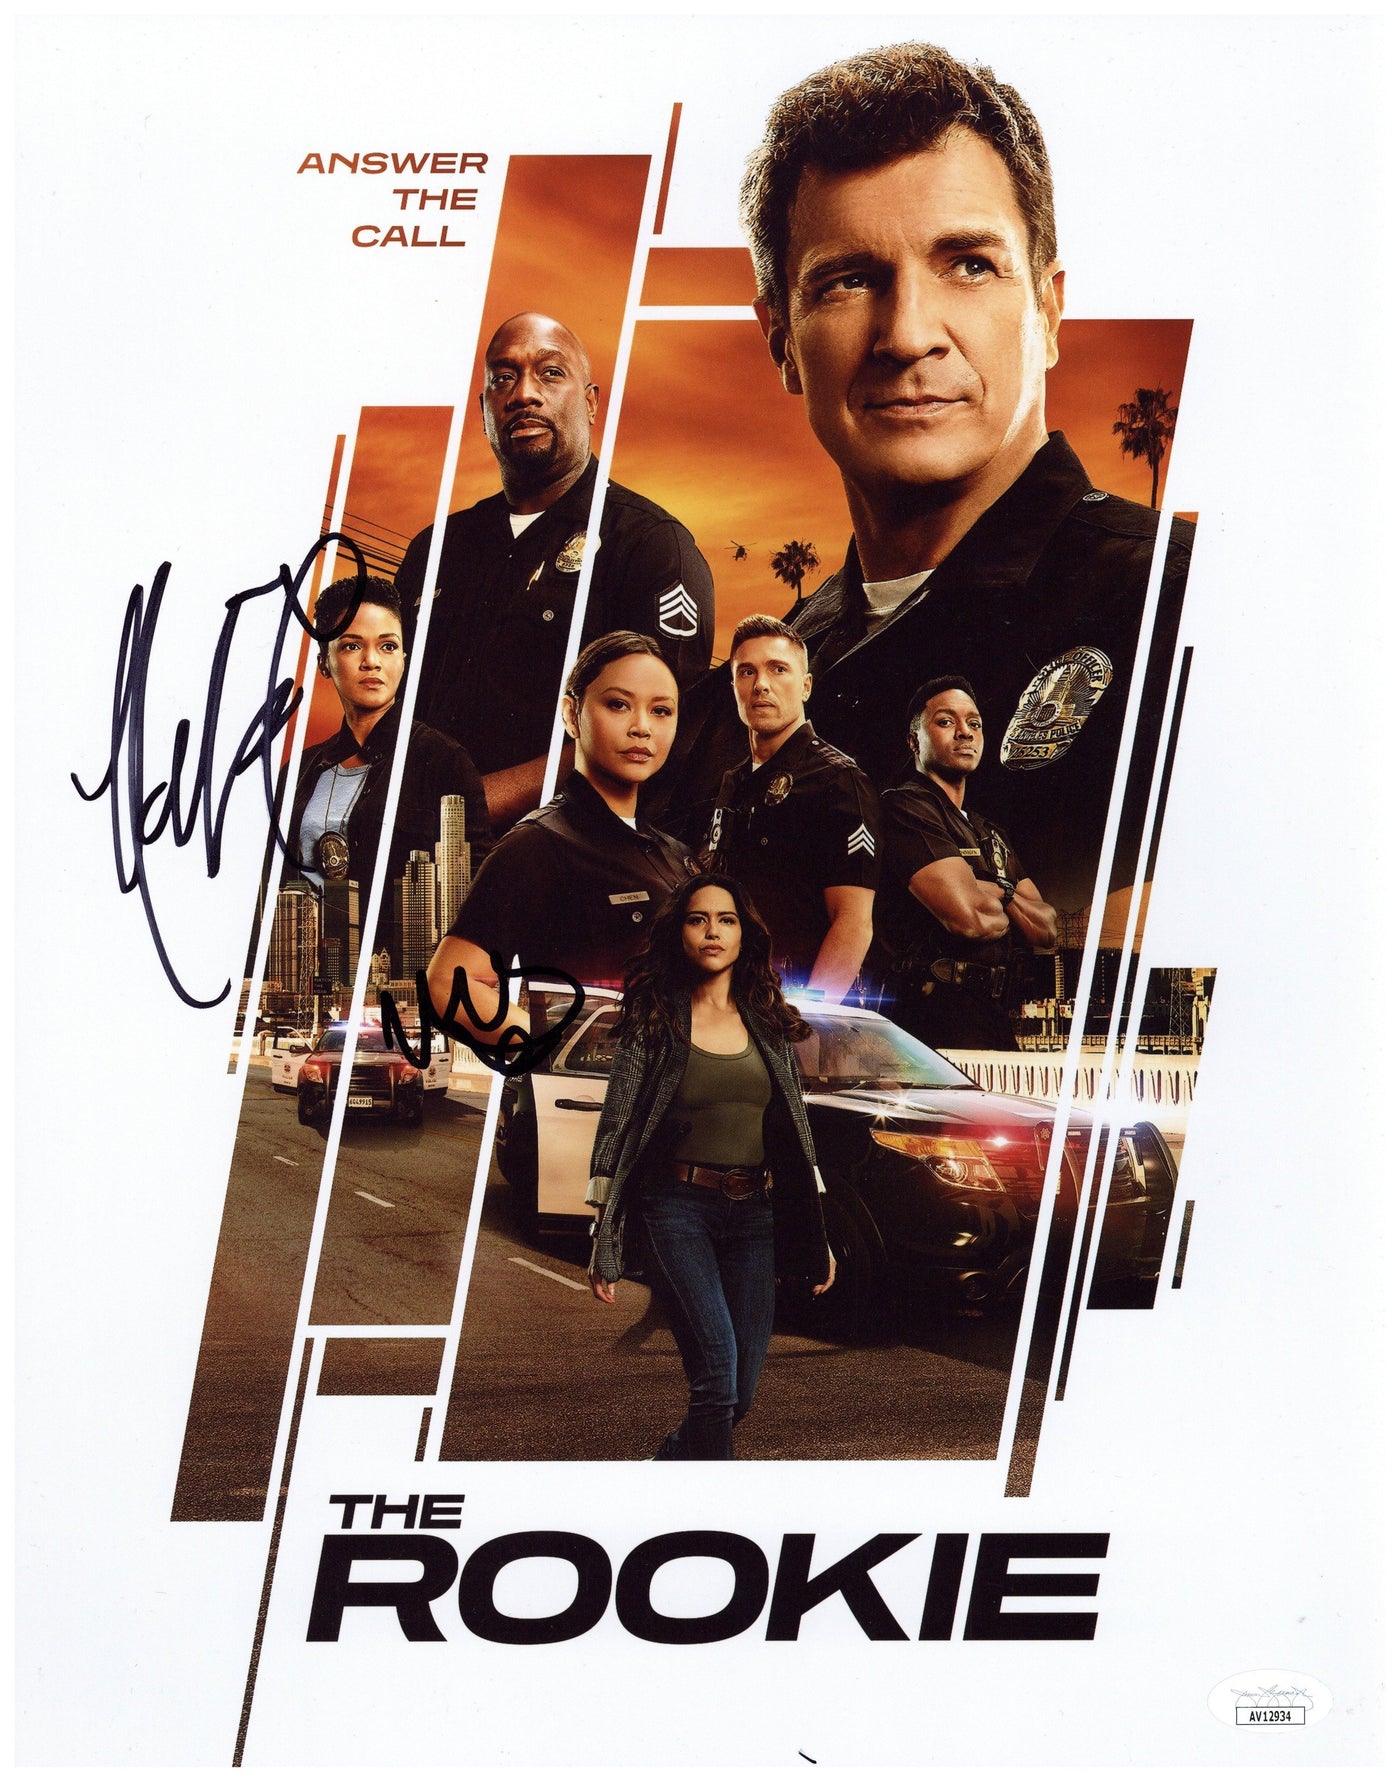 The Rookie Cast Signed 11x14 Photo Mekia Cox & Melissa O'Neil Autographed JSA COA